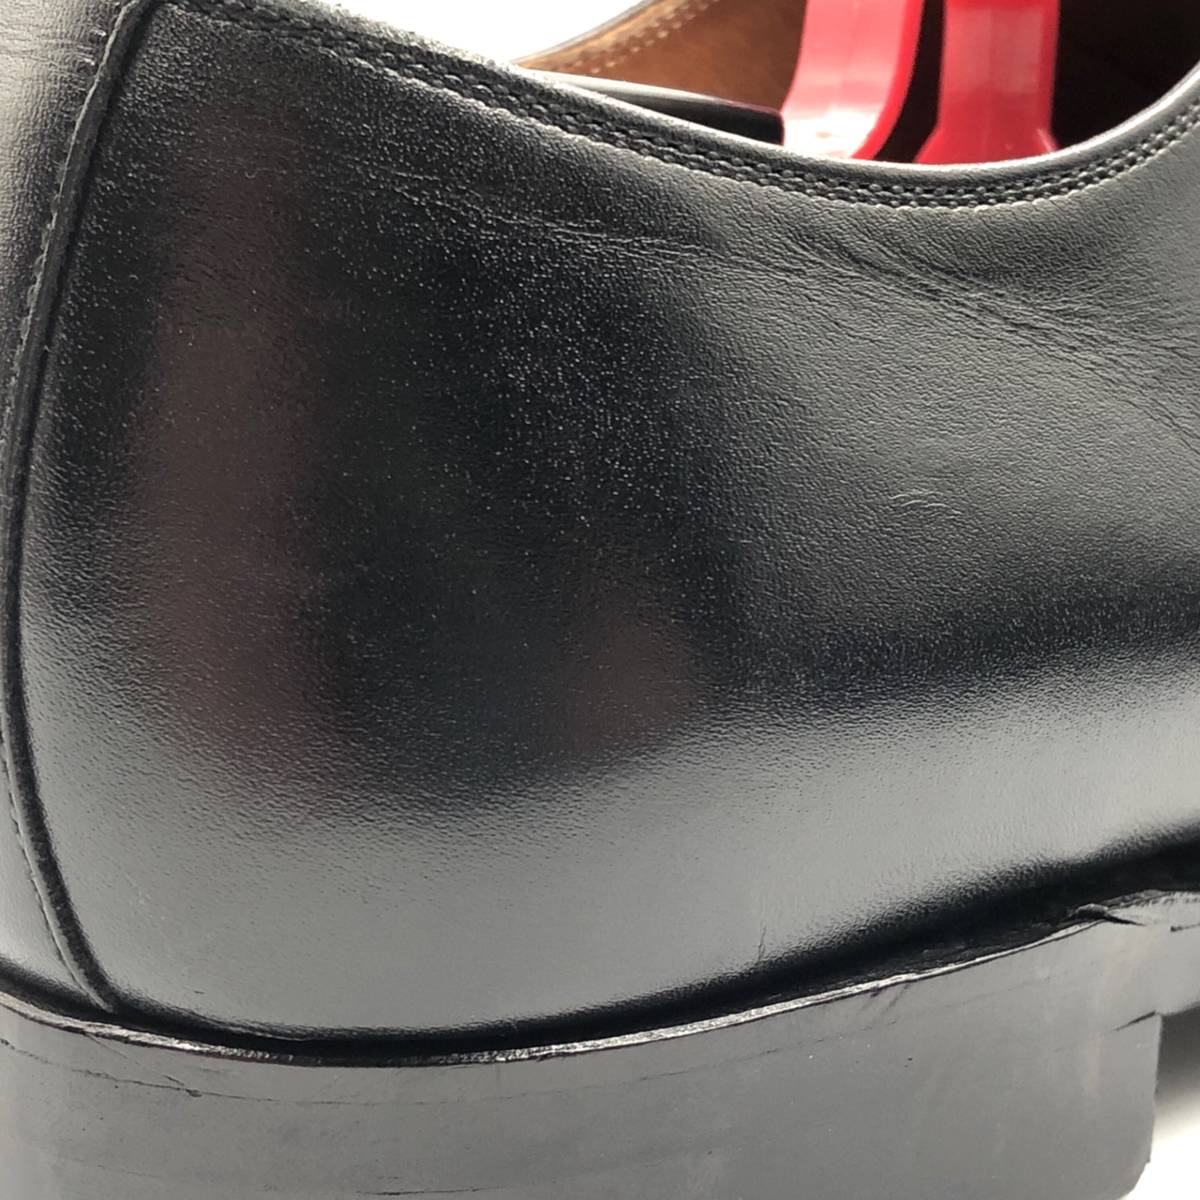 即決 SCOTCH GRAIN スコッチグレイン 26cm OP-0678 メンズ レザーシューズ ストレートチップ 黒 ブラック 革靴 皮靴 ビジネスシューズ